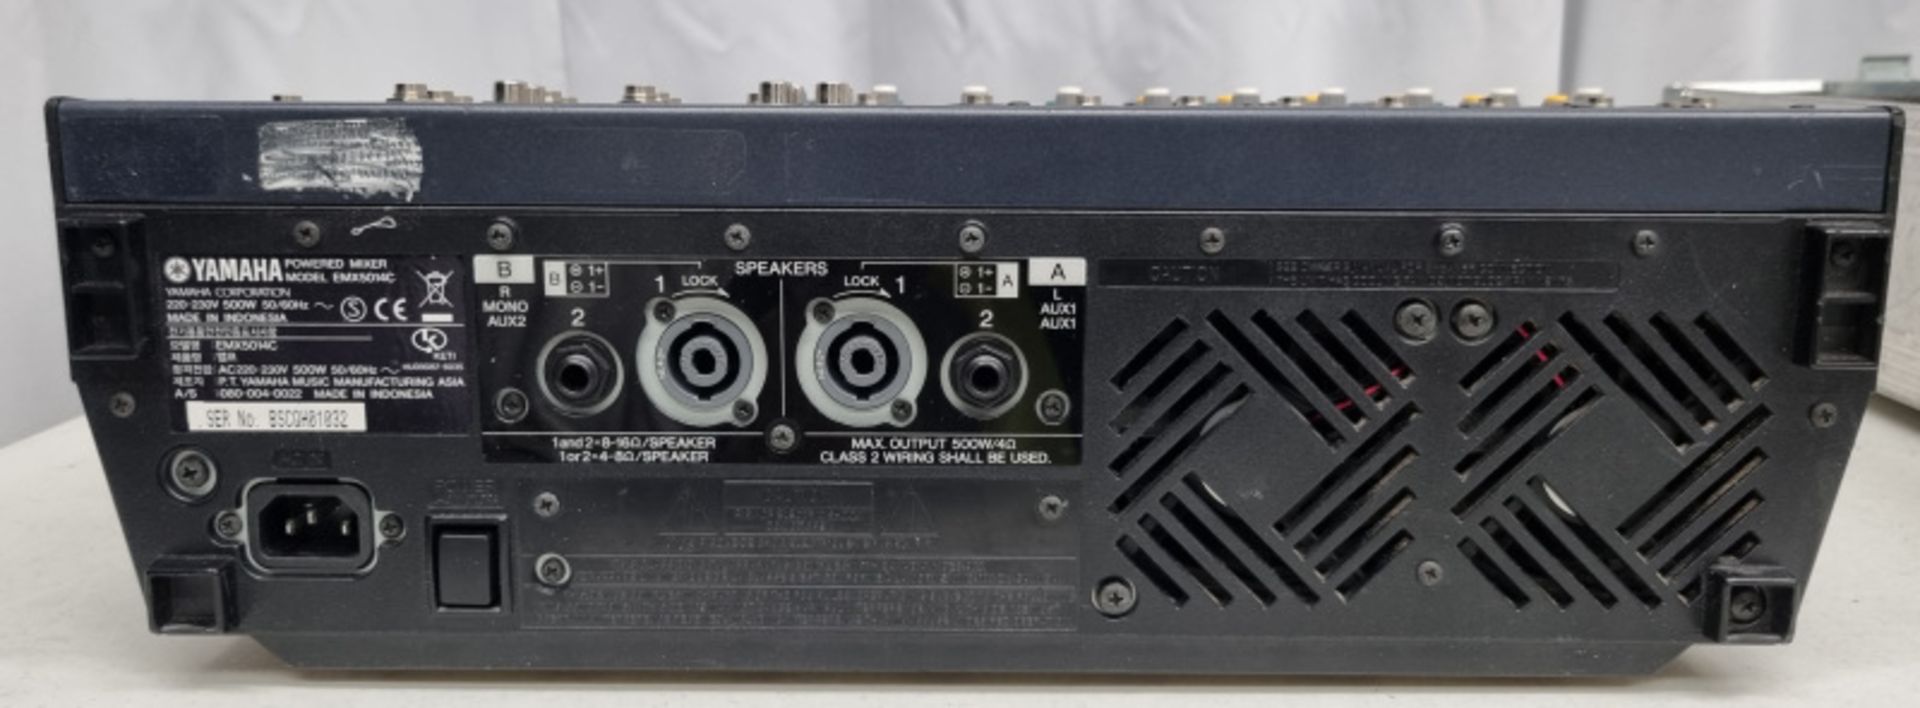 Yamaha EMX 5014C Mixer in flight case - Image 3 of 4